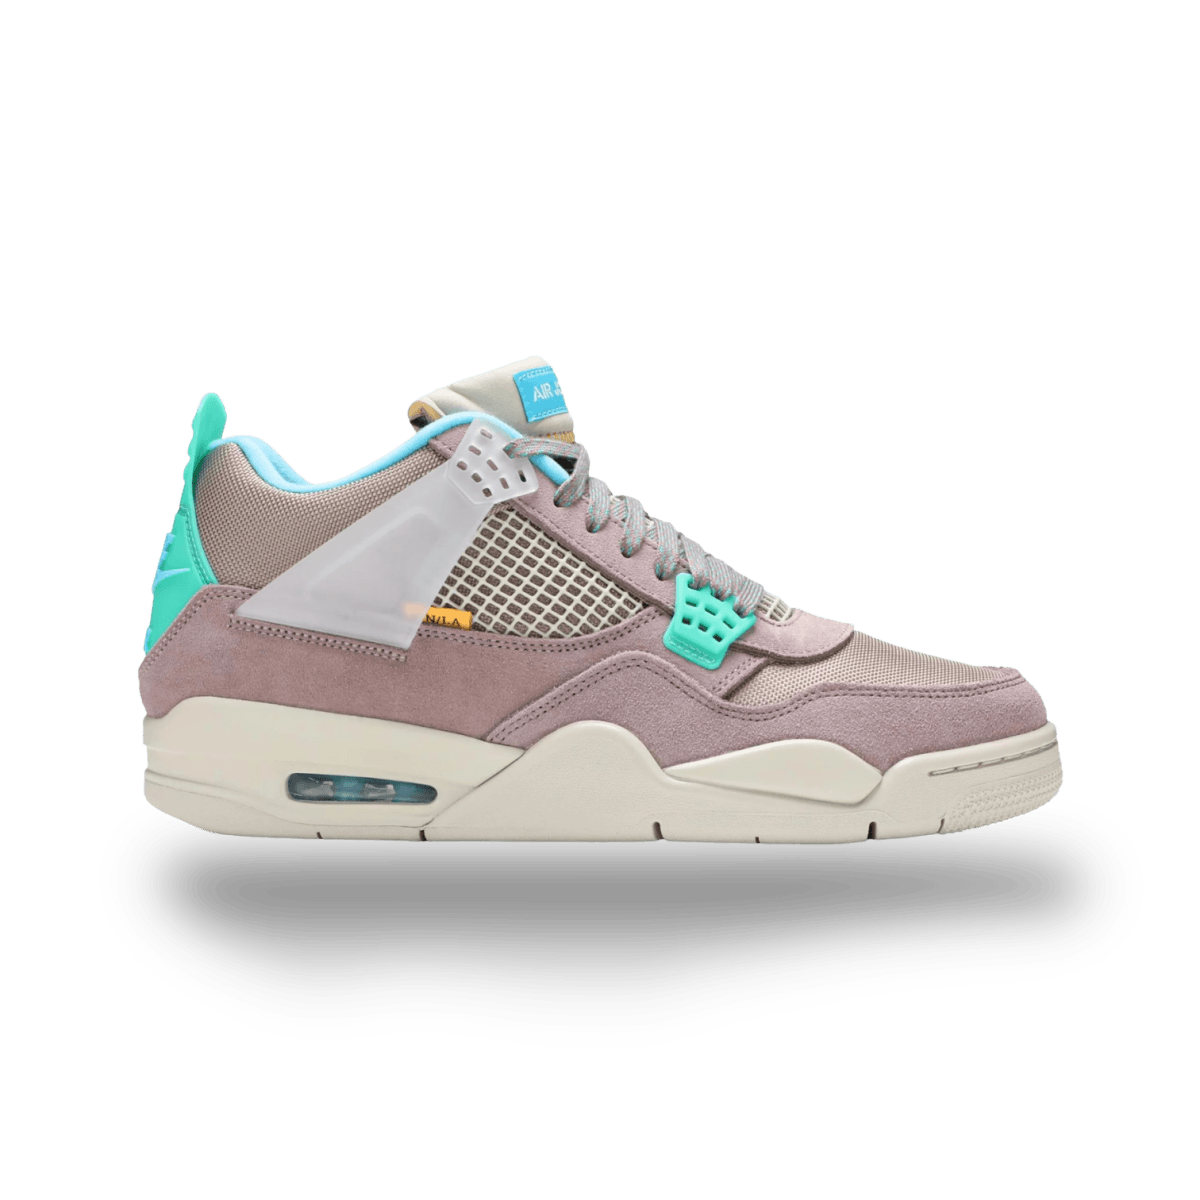 Union LA x Air Jordan 4 Retro 'Taupe Haze' - Mid Sneaker - Jawns on Fire Sneakers & Streetwear